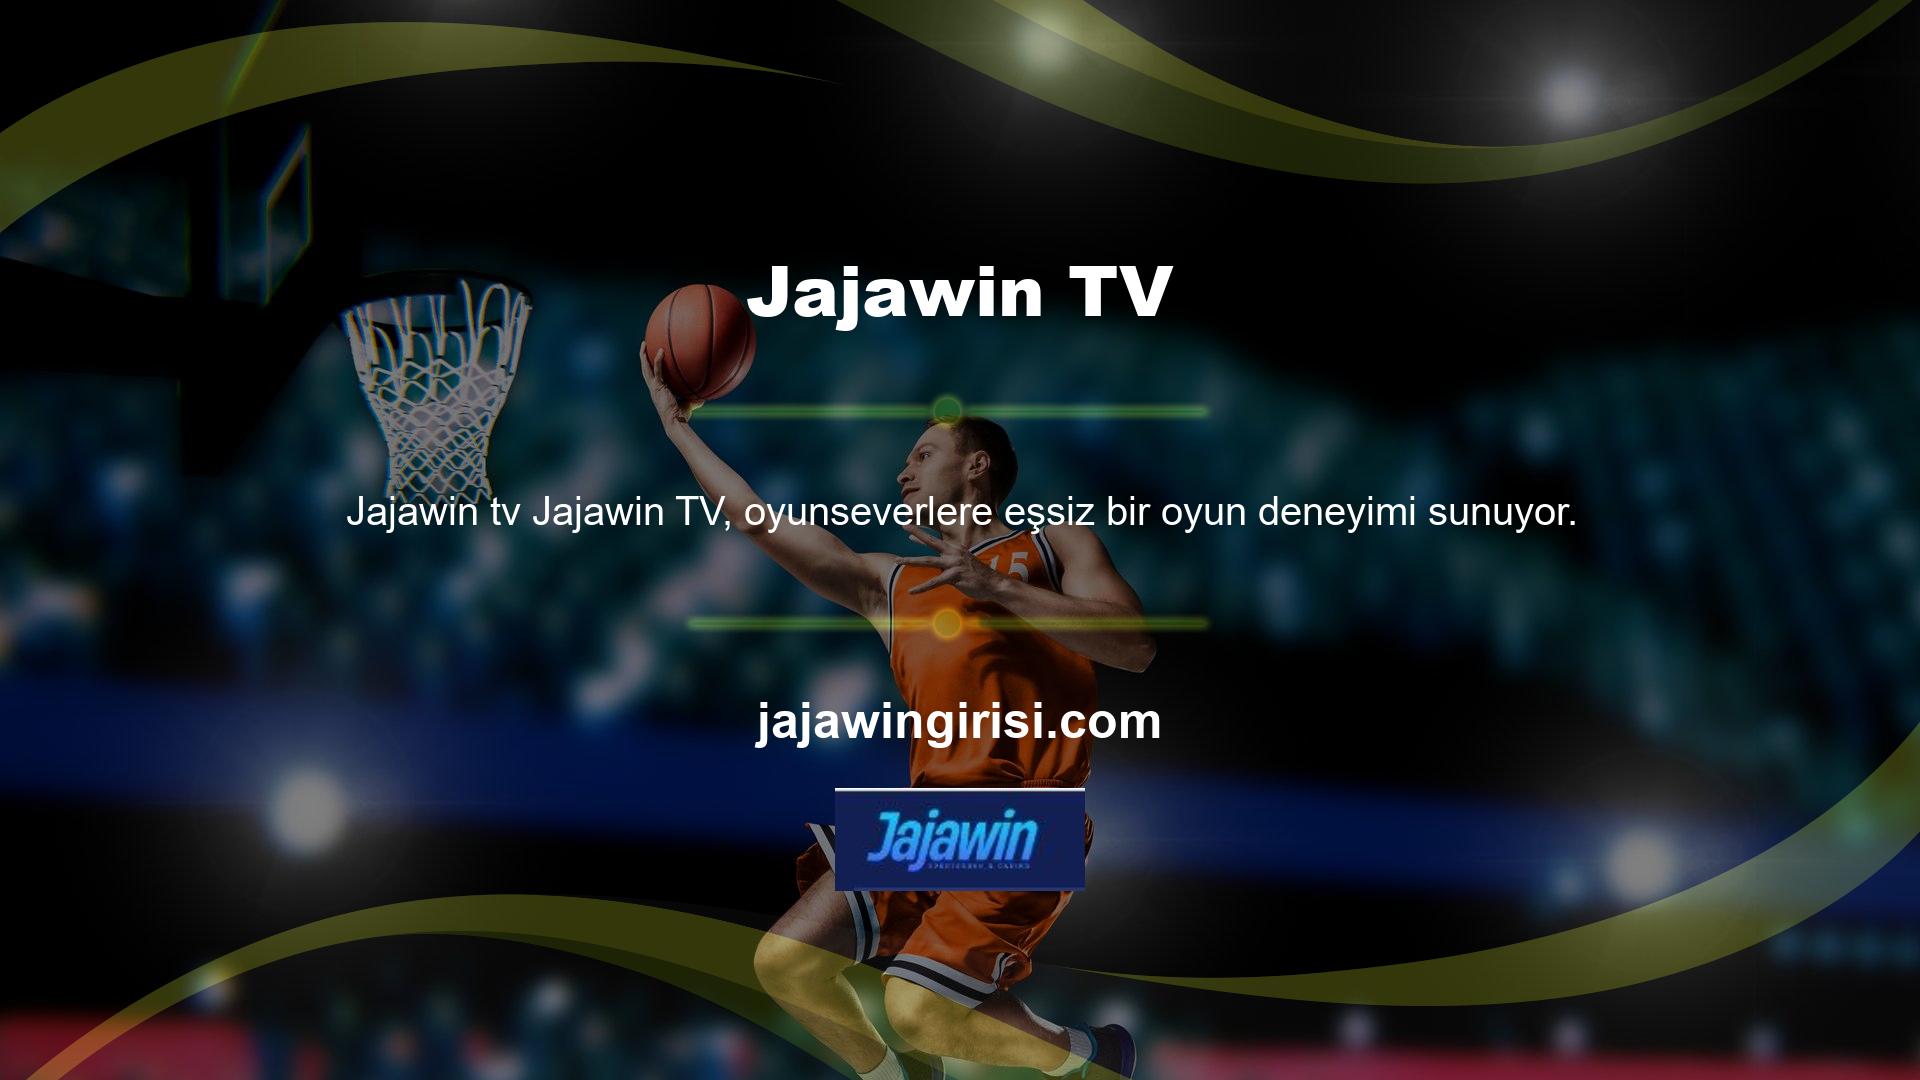 Güncel Jajawin giriş adresinizle sayfayı ziyaret ederseniz sol üst köşede Jajawin TV sekmesini göreceksiniz